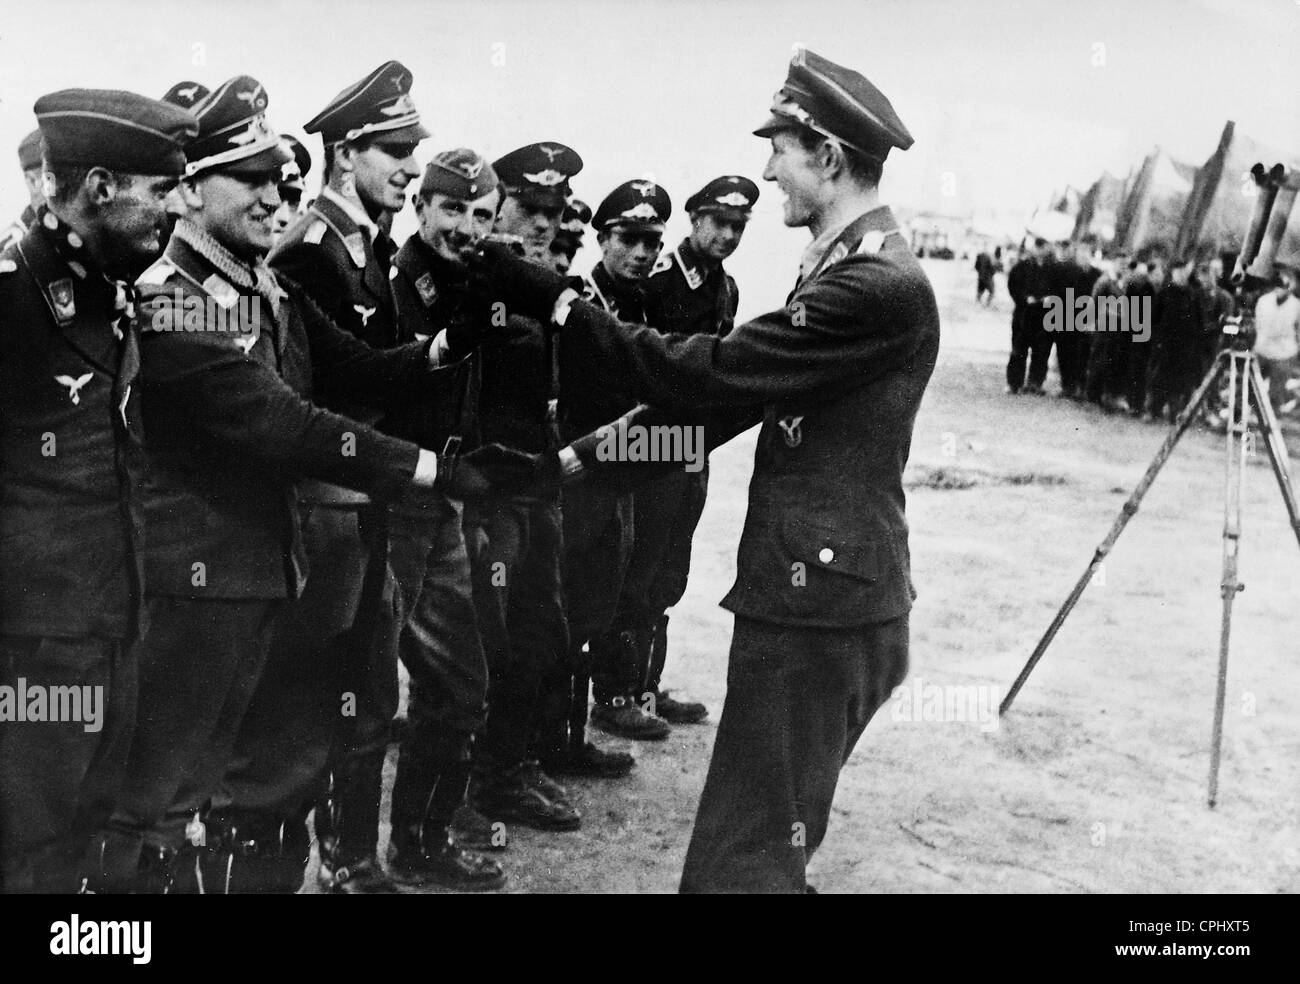 Wilhelm Balthazar ehrt eine Pilot in der Luftschlacht um England 1940 Stockfoto